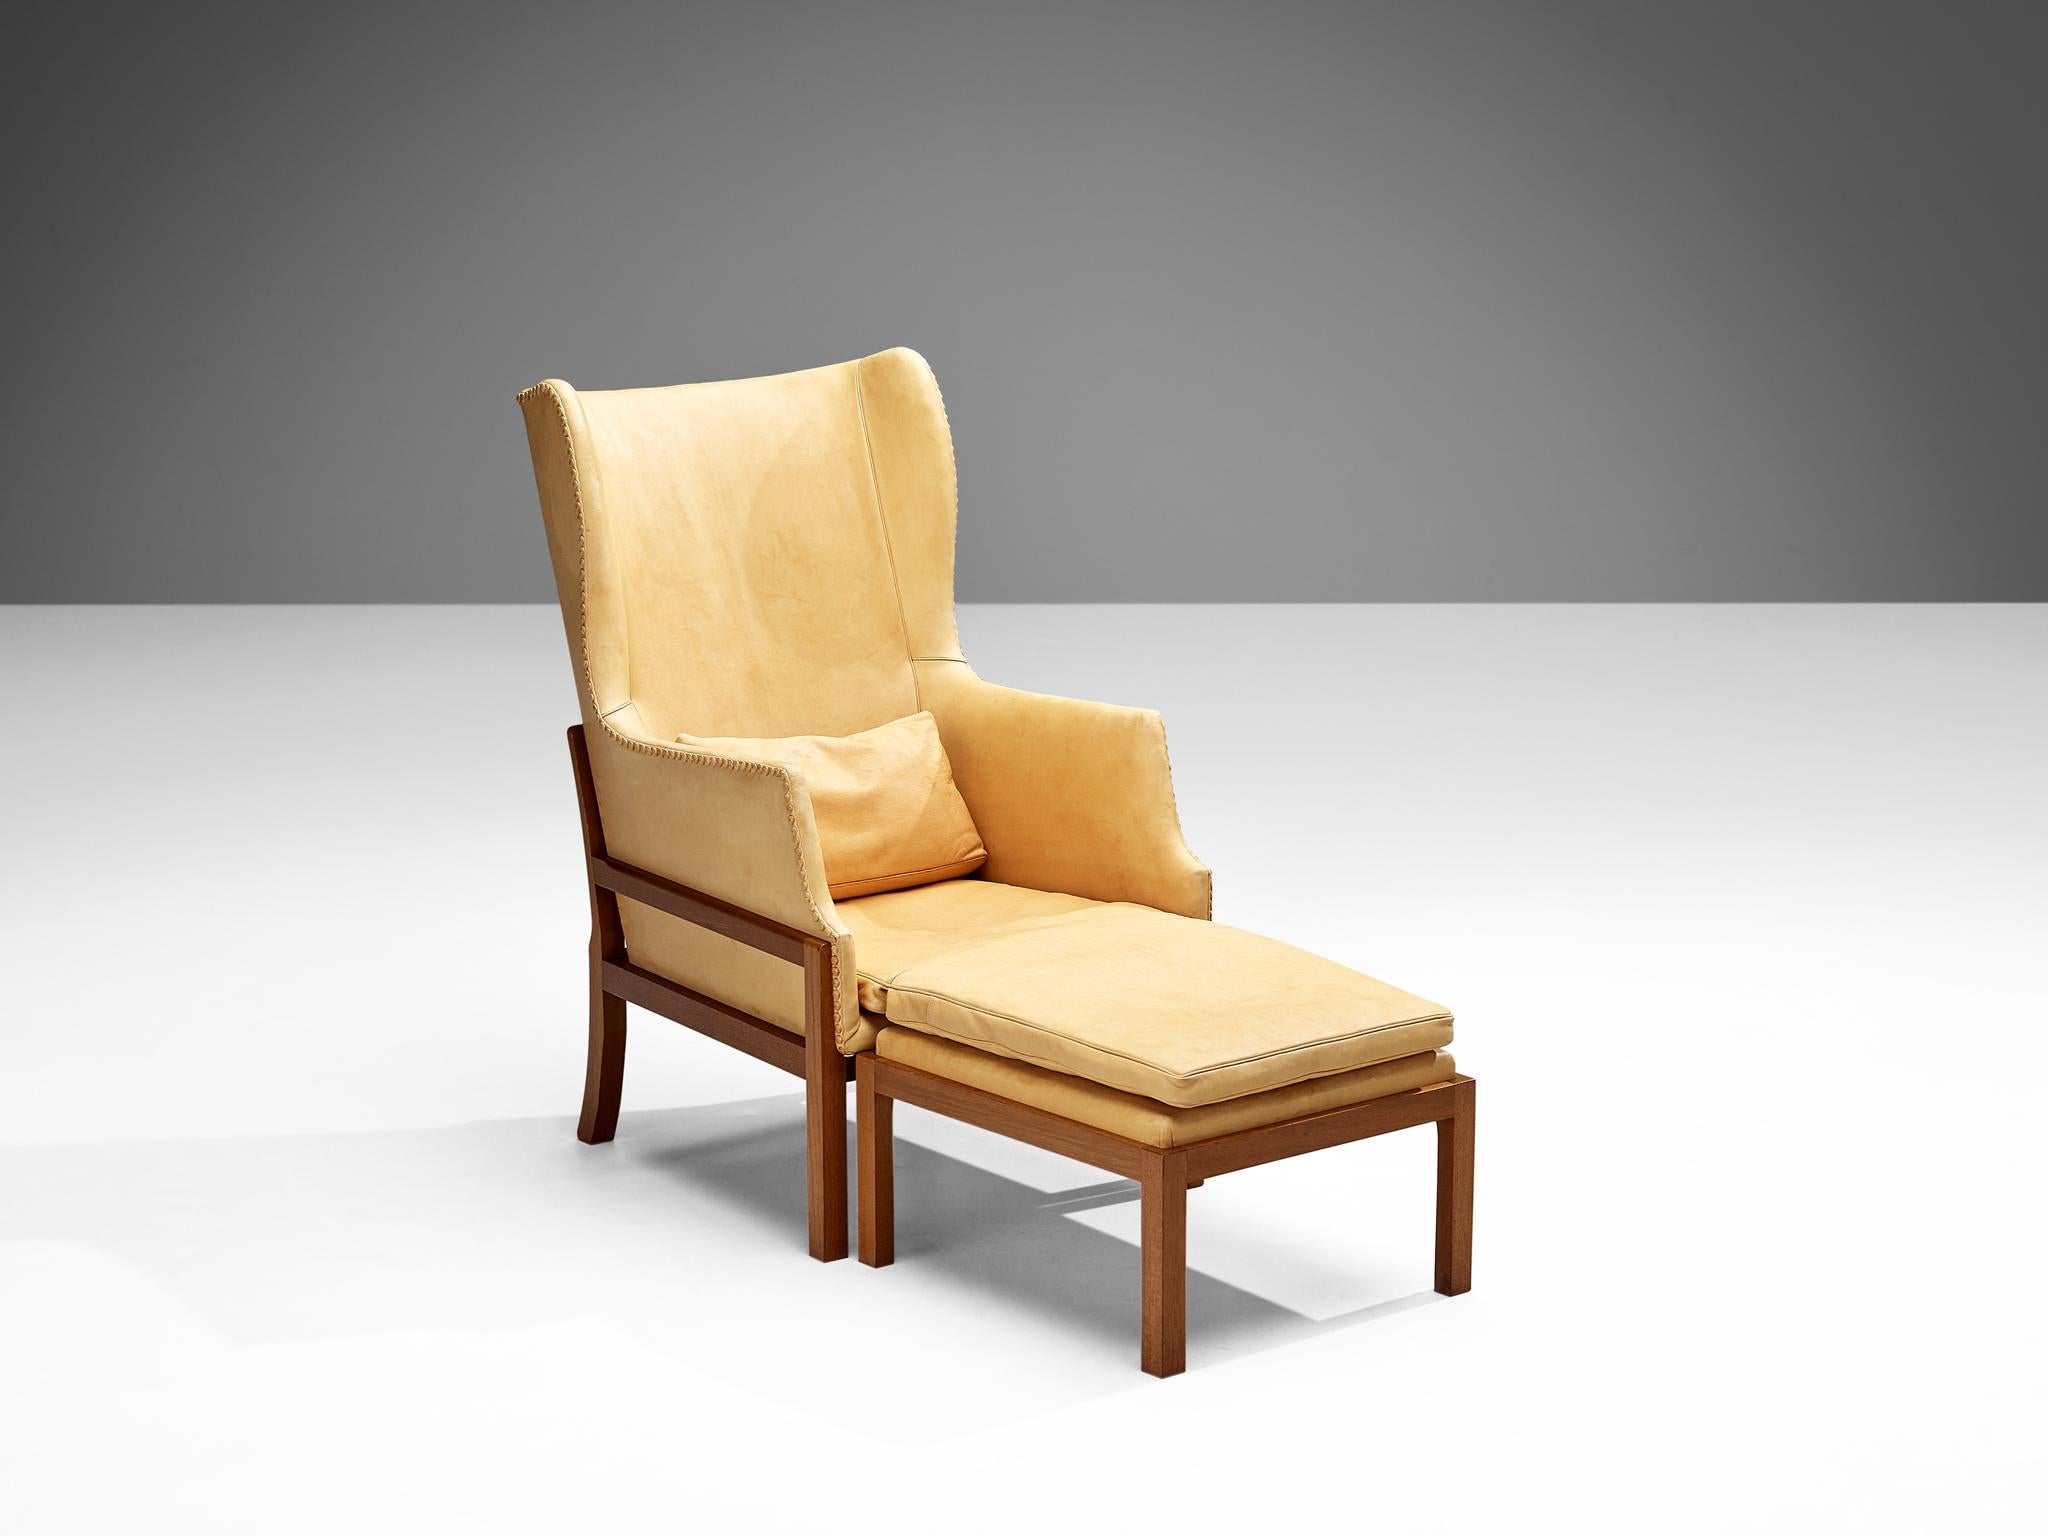 Mogens Koch pour K.Koch, chaise longue à dossier et ottoman, modèle MK50, acajou, cuir, Danemark, design 1936, production 1964-1979.

La chaise à oreilles de Mogens Koch a été inspirée par le design du mobilier de Kaare Klint, qui s'est lui-même